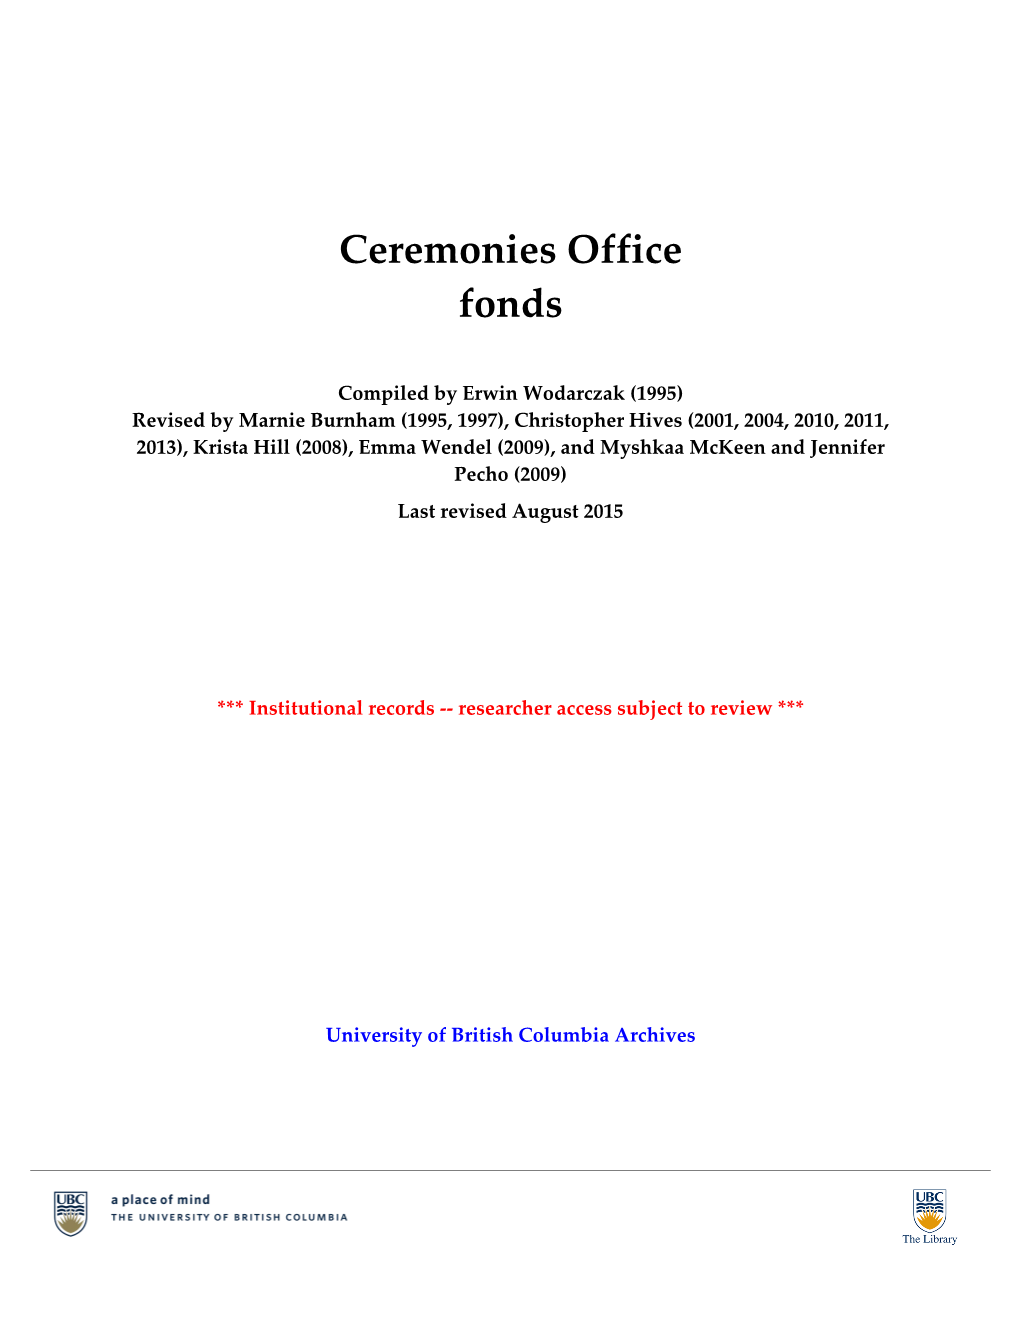 Ceremonies Office Fonds